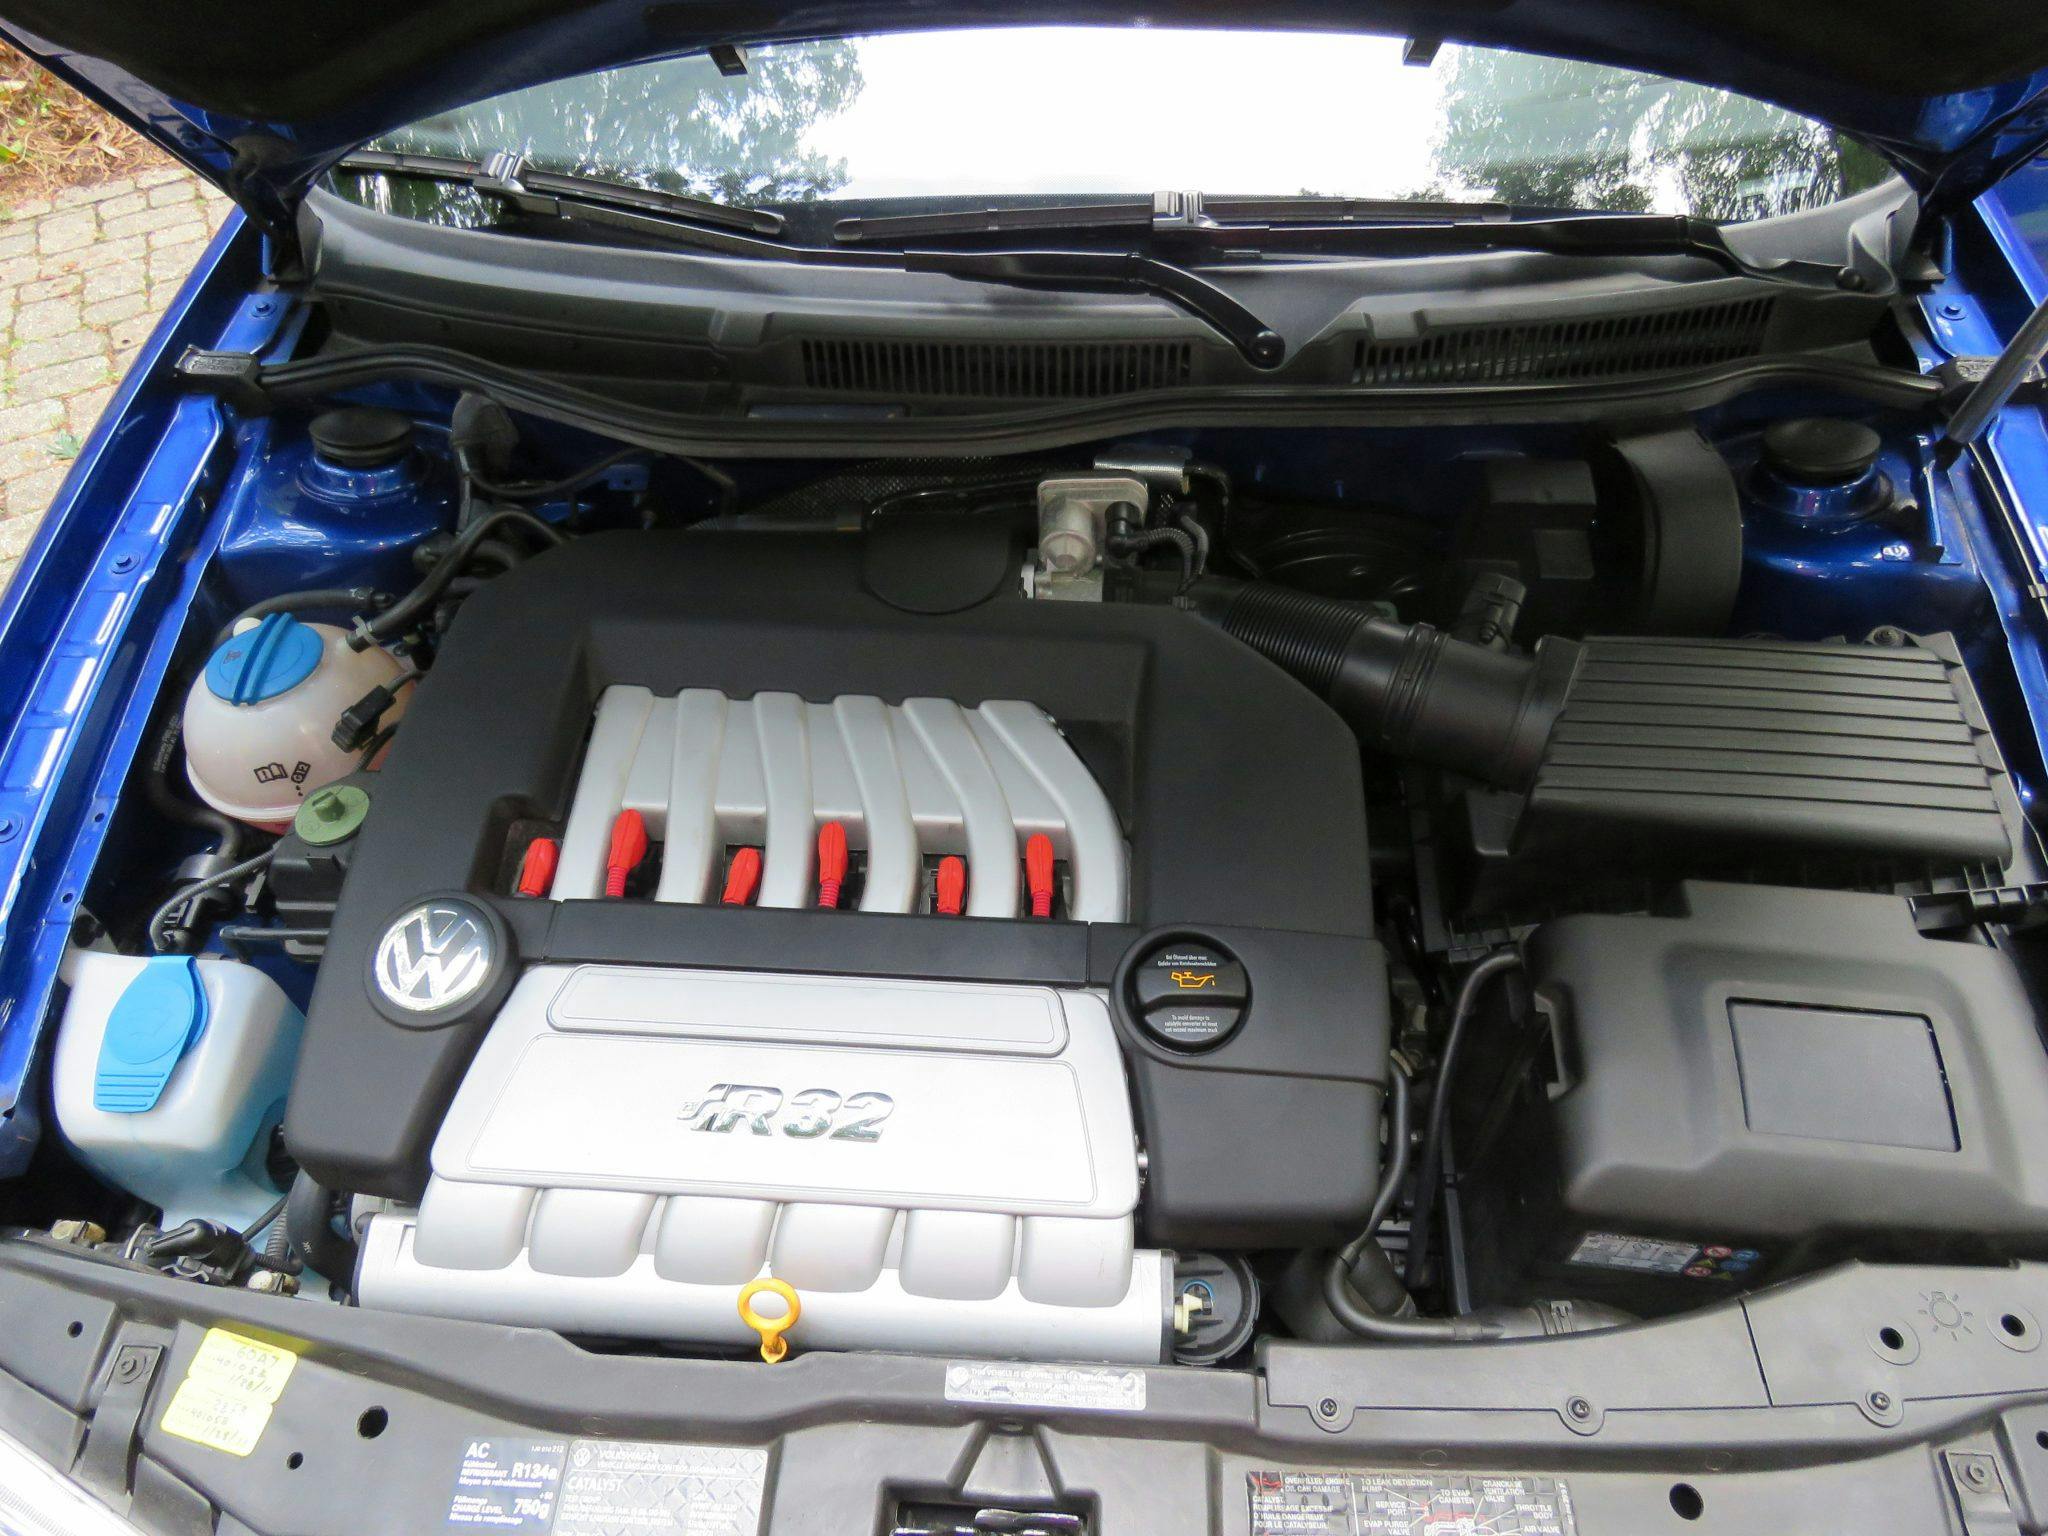 2004 VW R32 engine bay